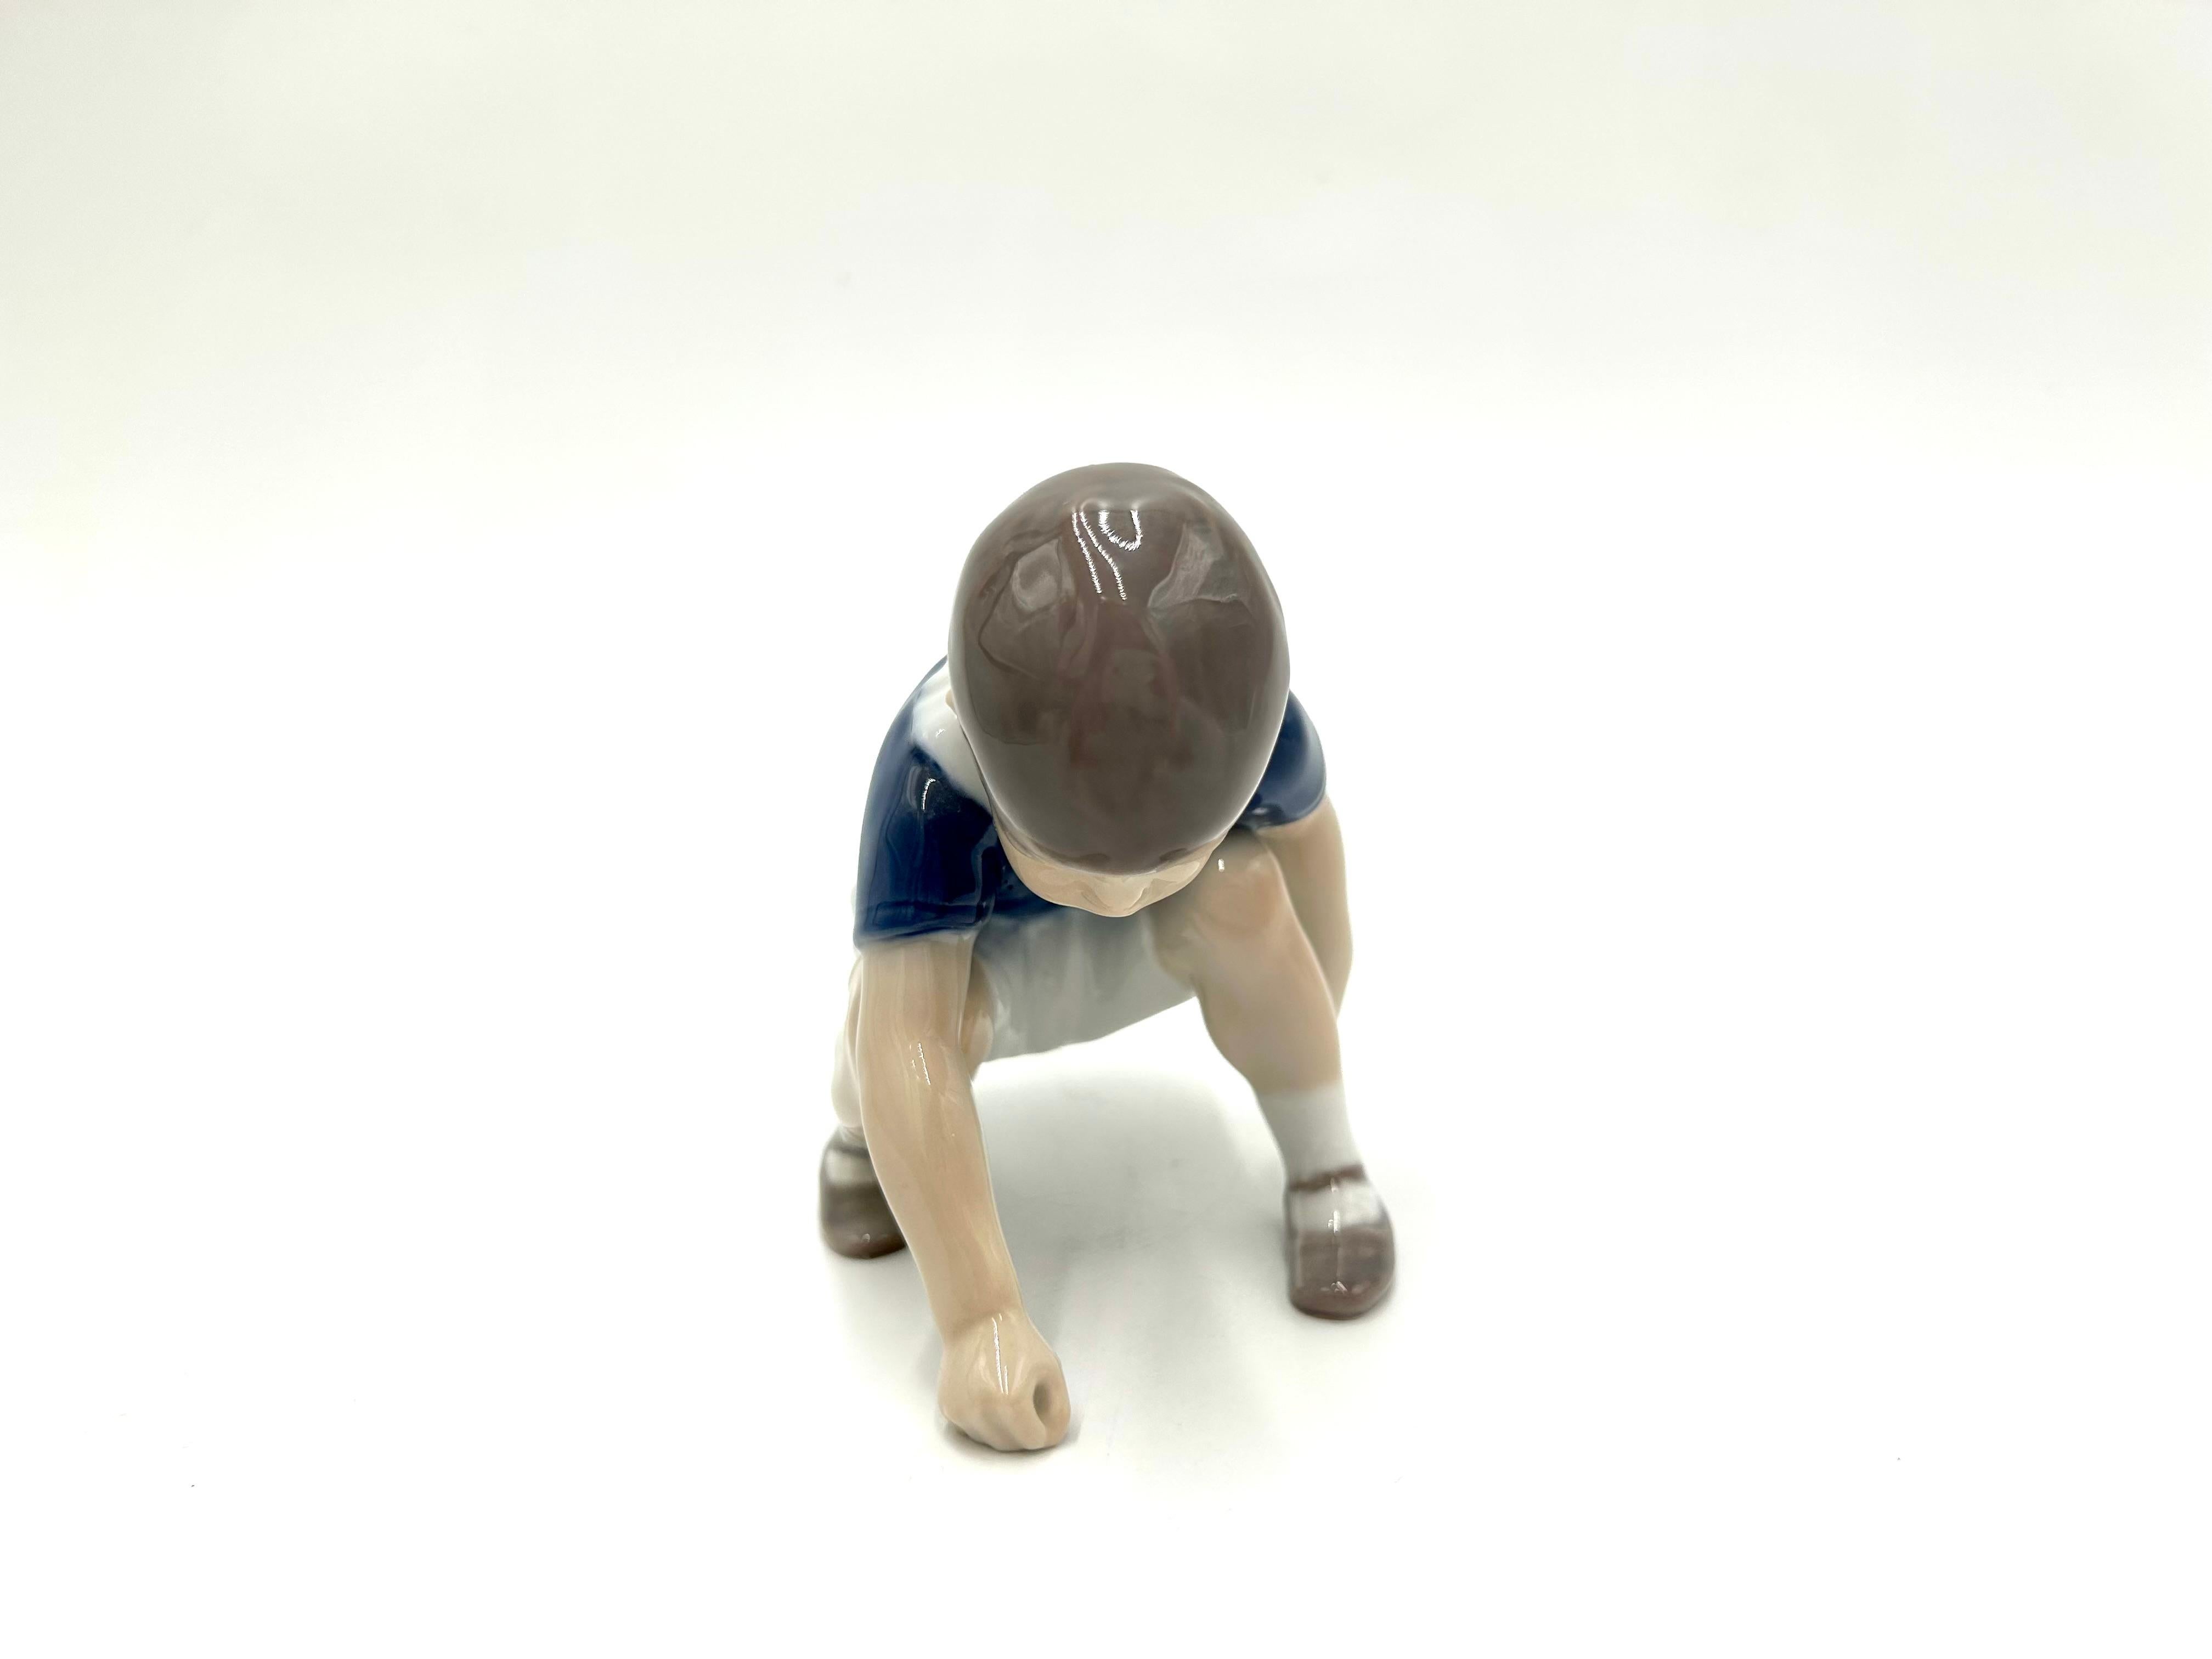 Figurine en porcelaine représentant un garçon accroupi en train de jouer
Produit par la manufacture danoise Bing & Grondahl
La marque est utilisée dans les années 1960
Très bon état, sans dommage.
Mesures : Hauteur : 10cm
Largeur :